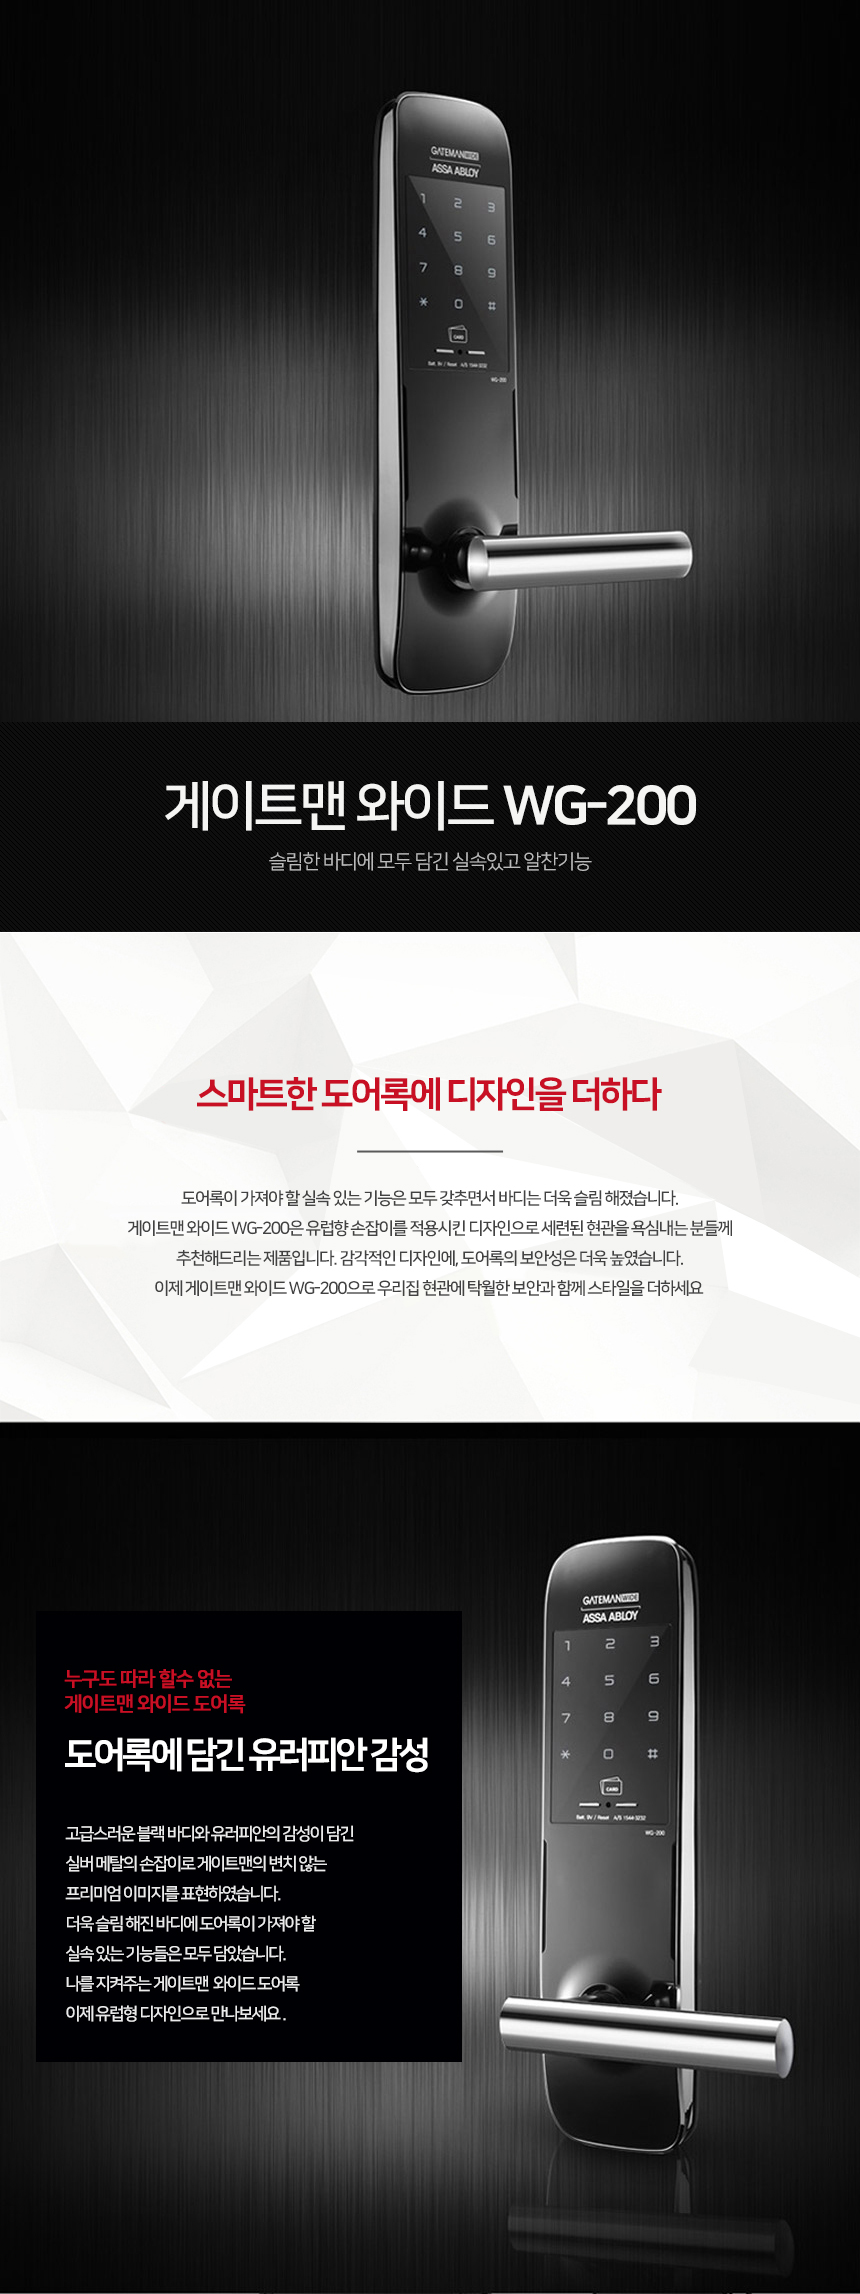 WG-200_01.jpg